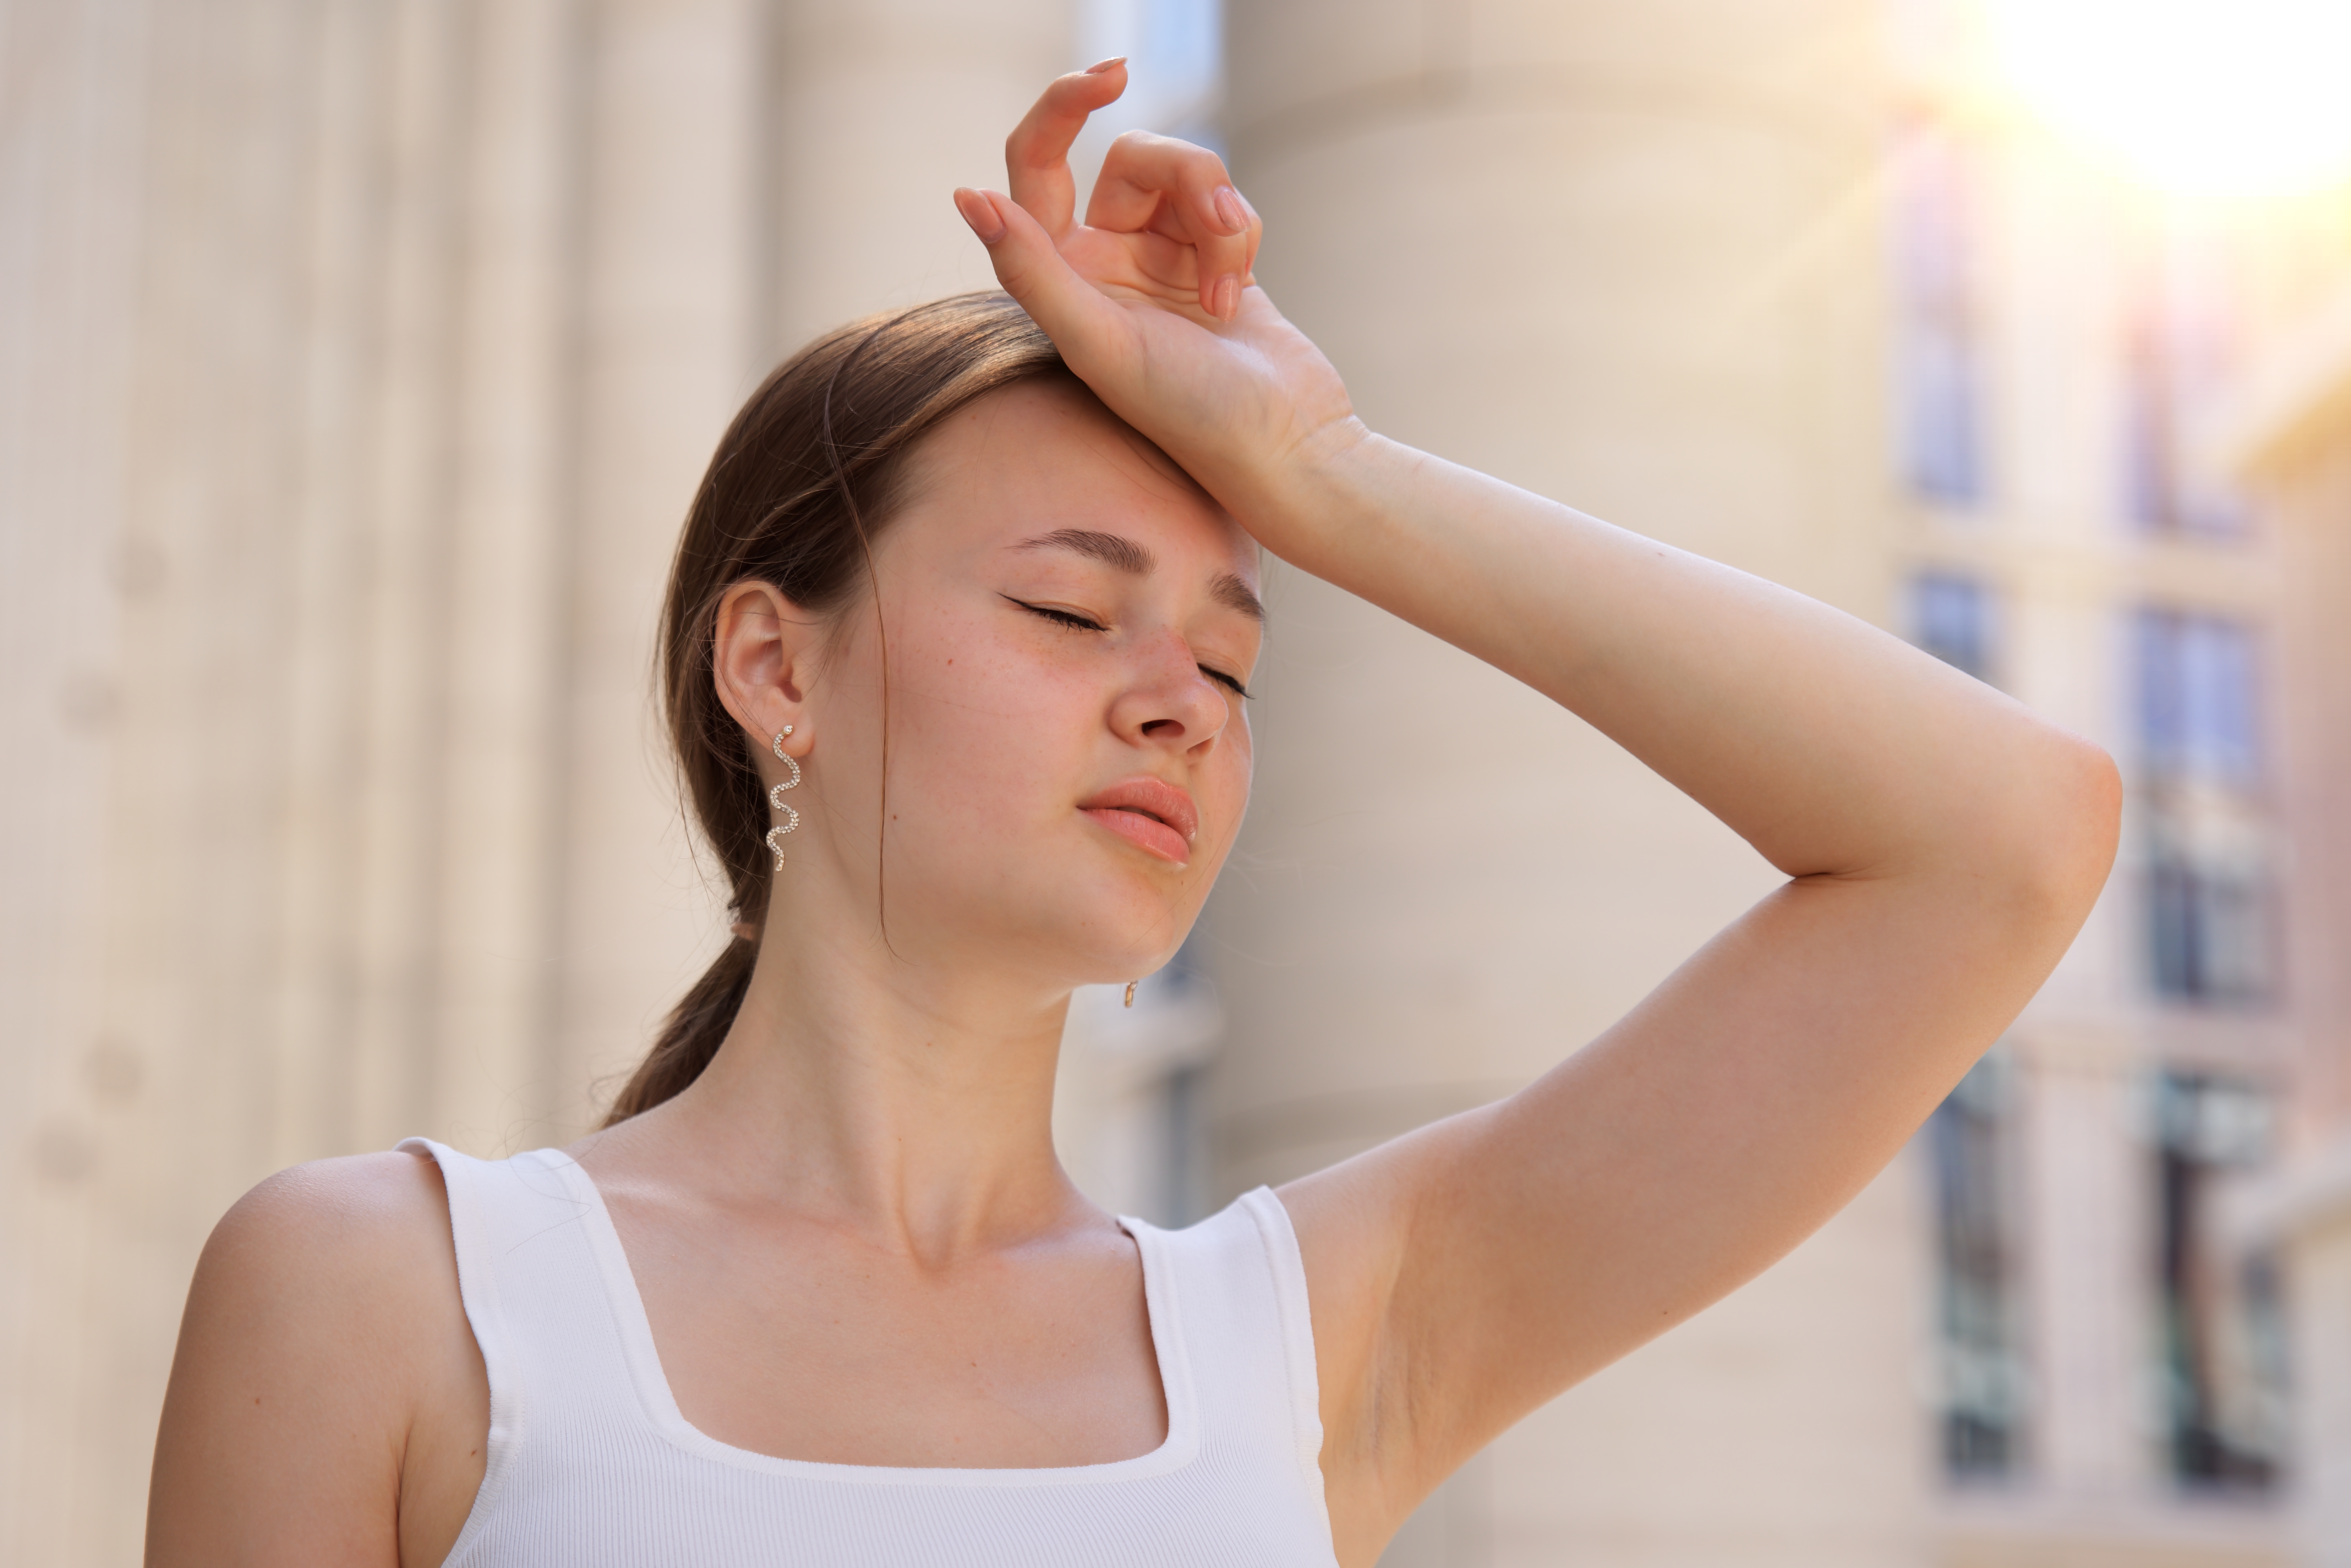 Chica joven con la mano en la cabeza mirando mareada | Fuente: Shutterstock